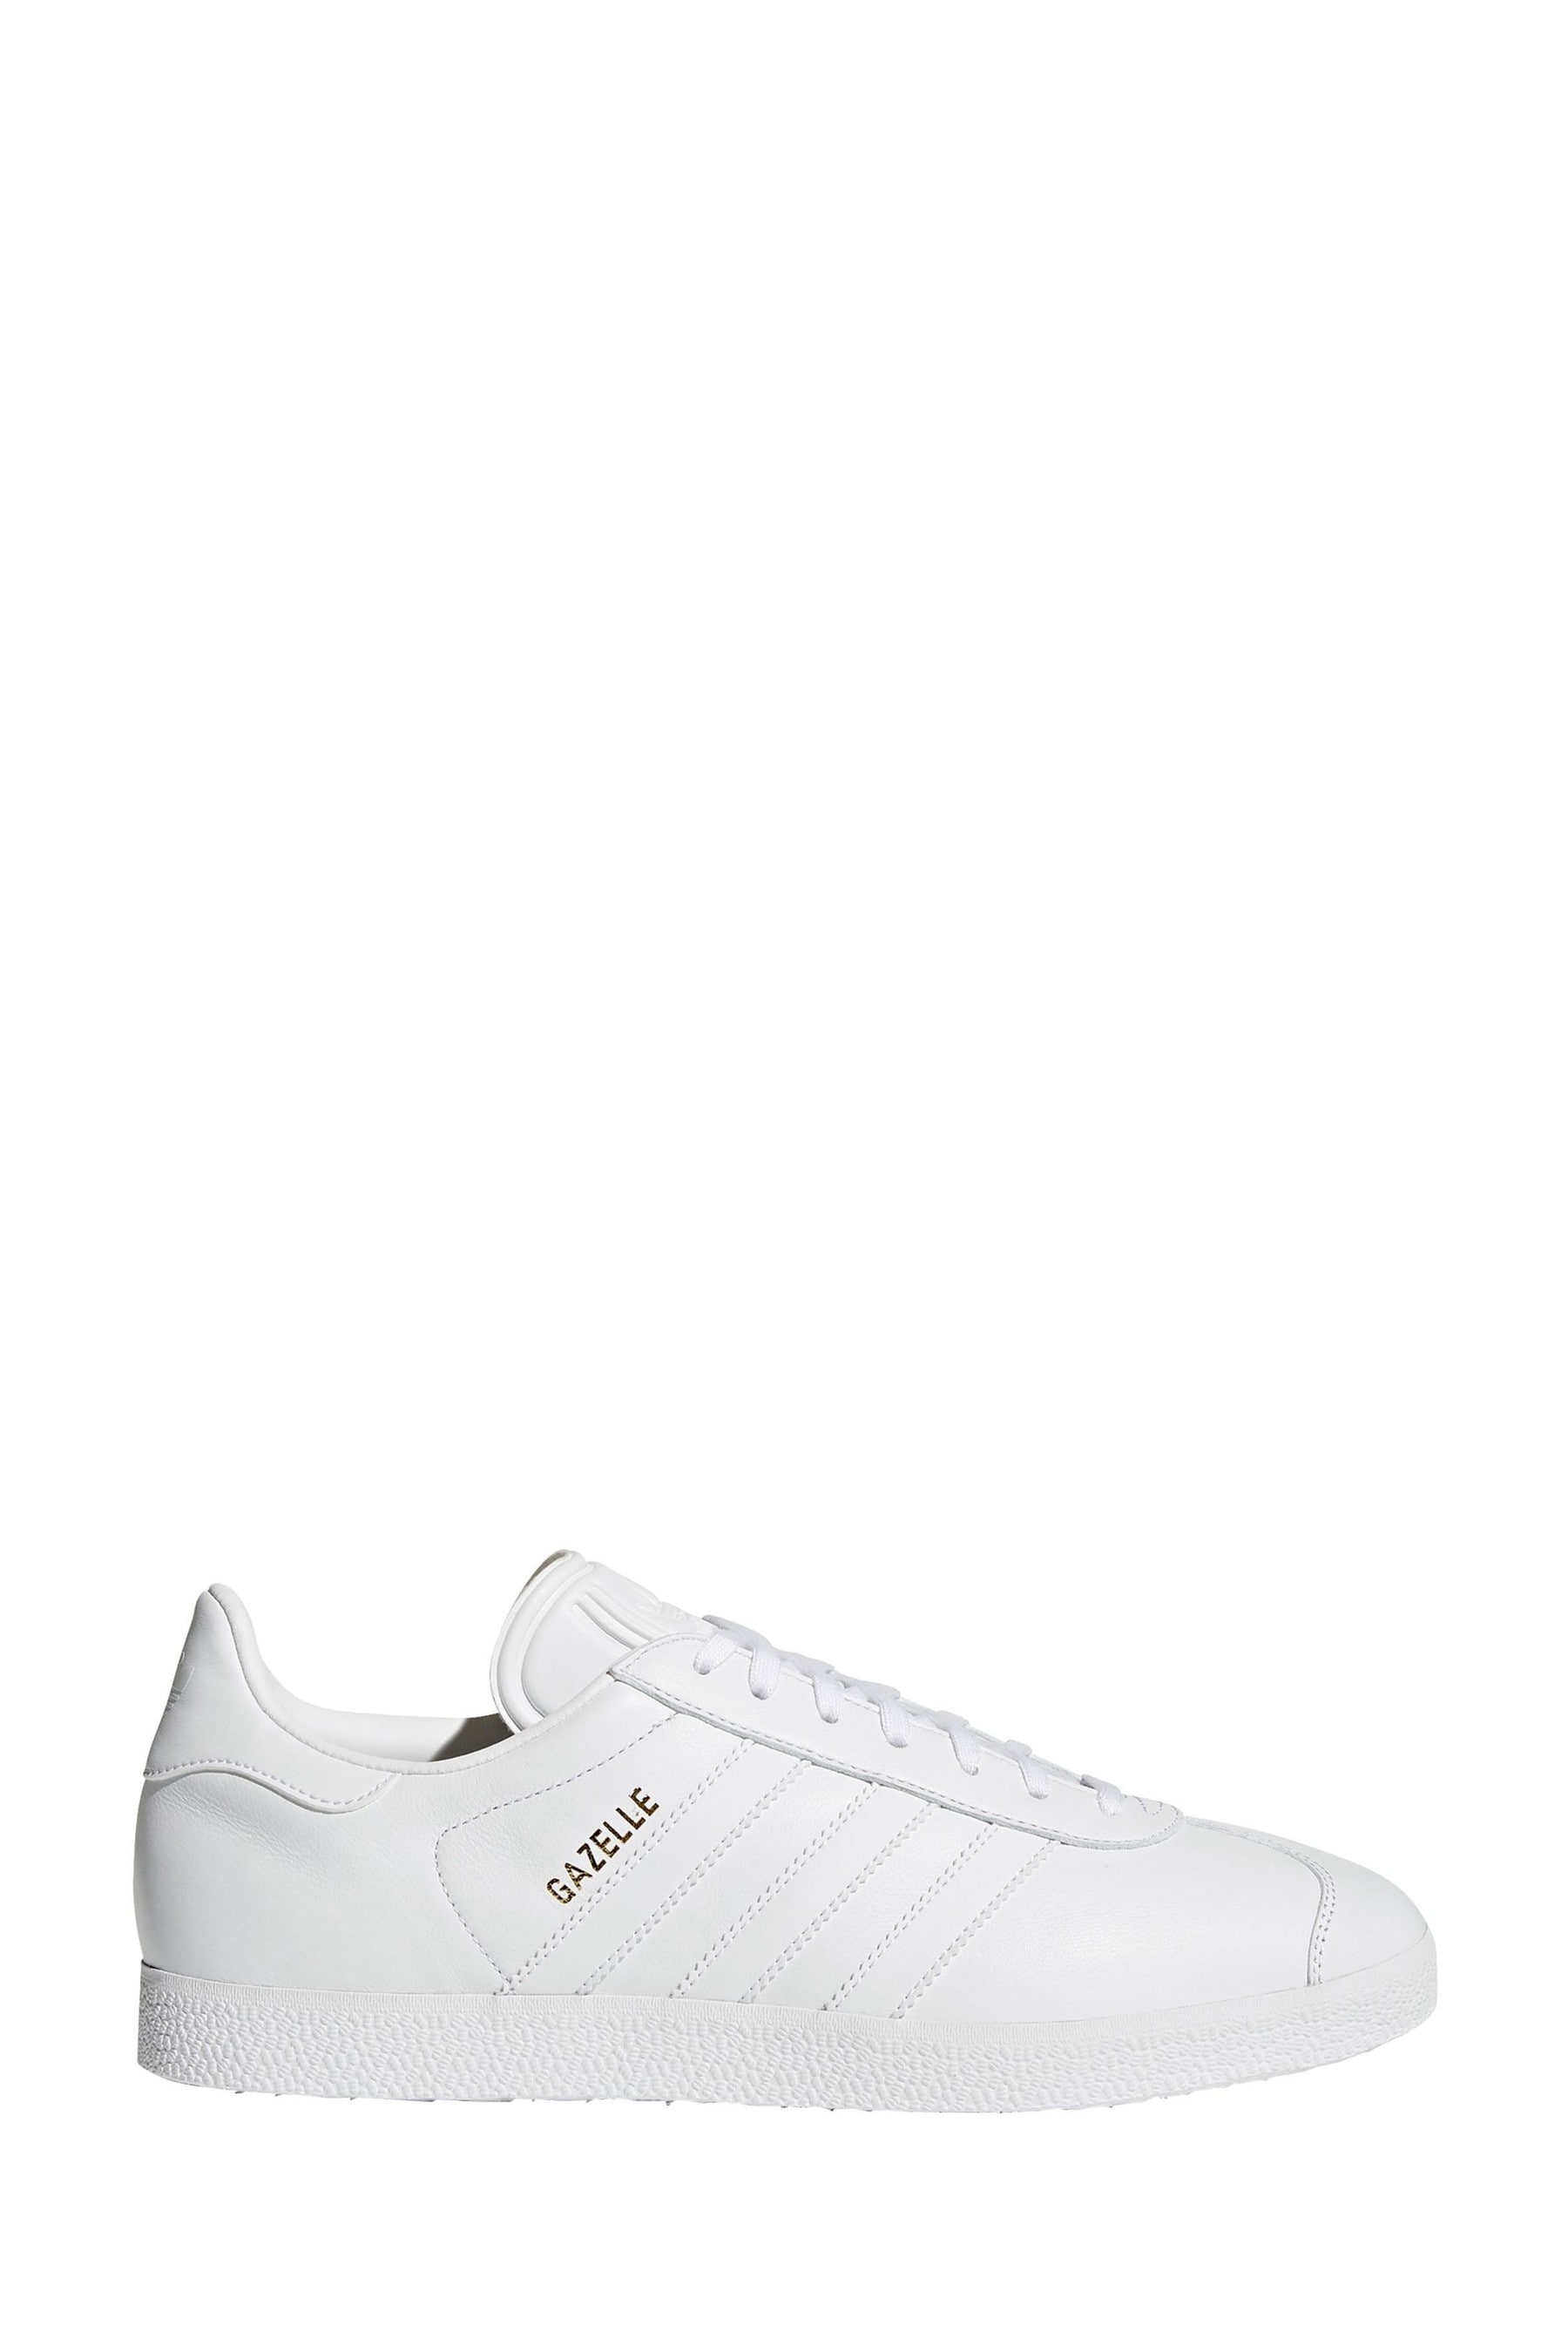 Кроссовки adidas Originals Gazelle adidas originals, белый кроссовки adidas originals gazelle white